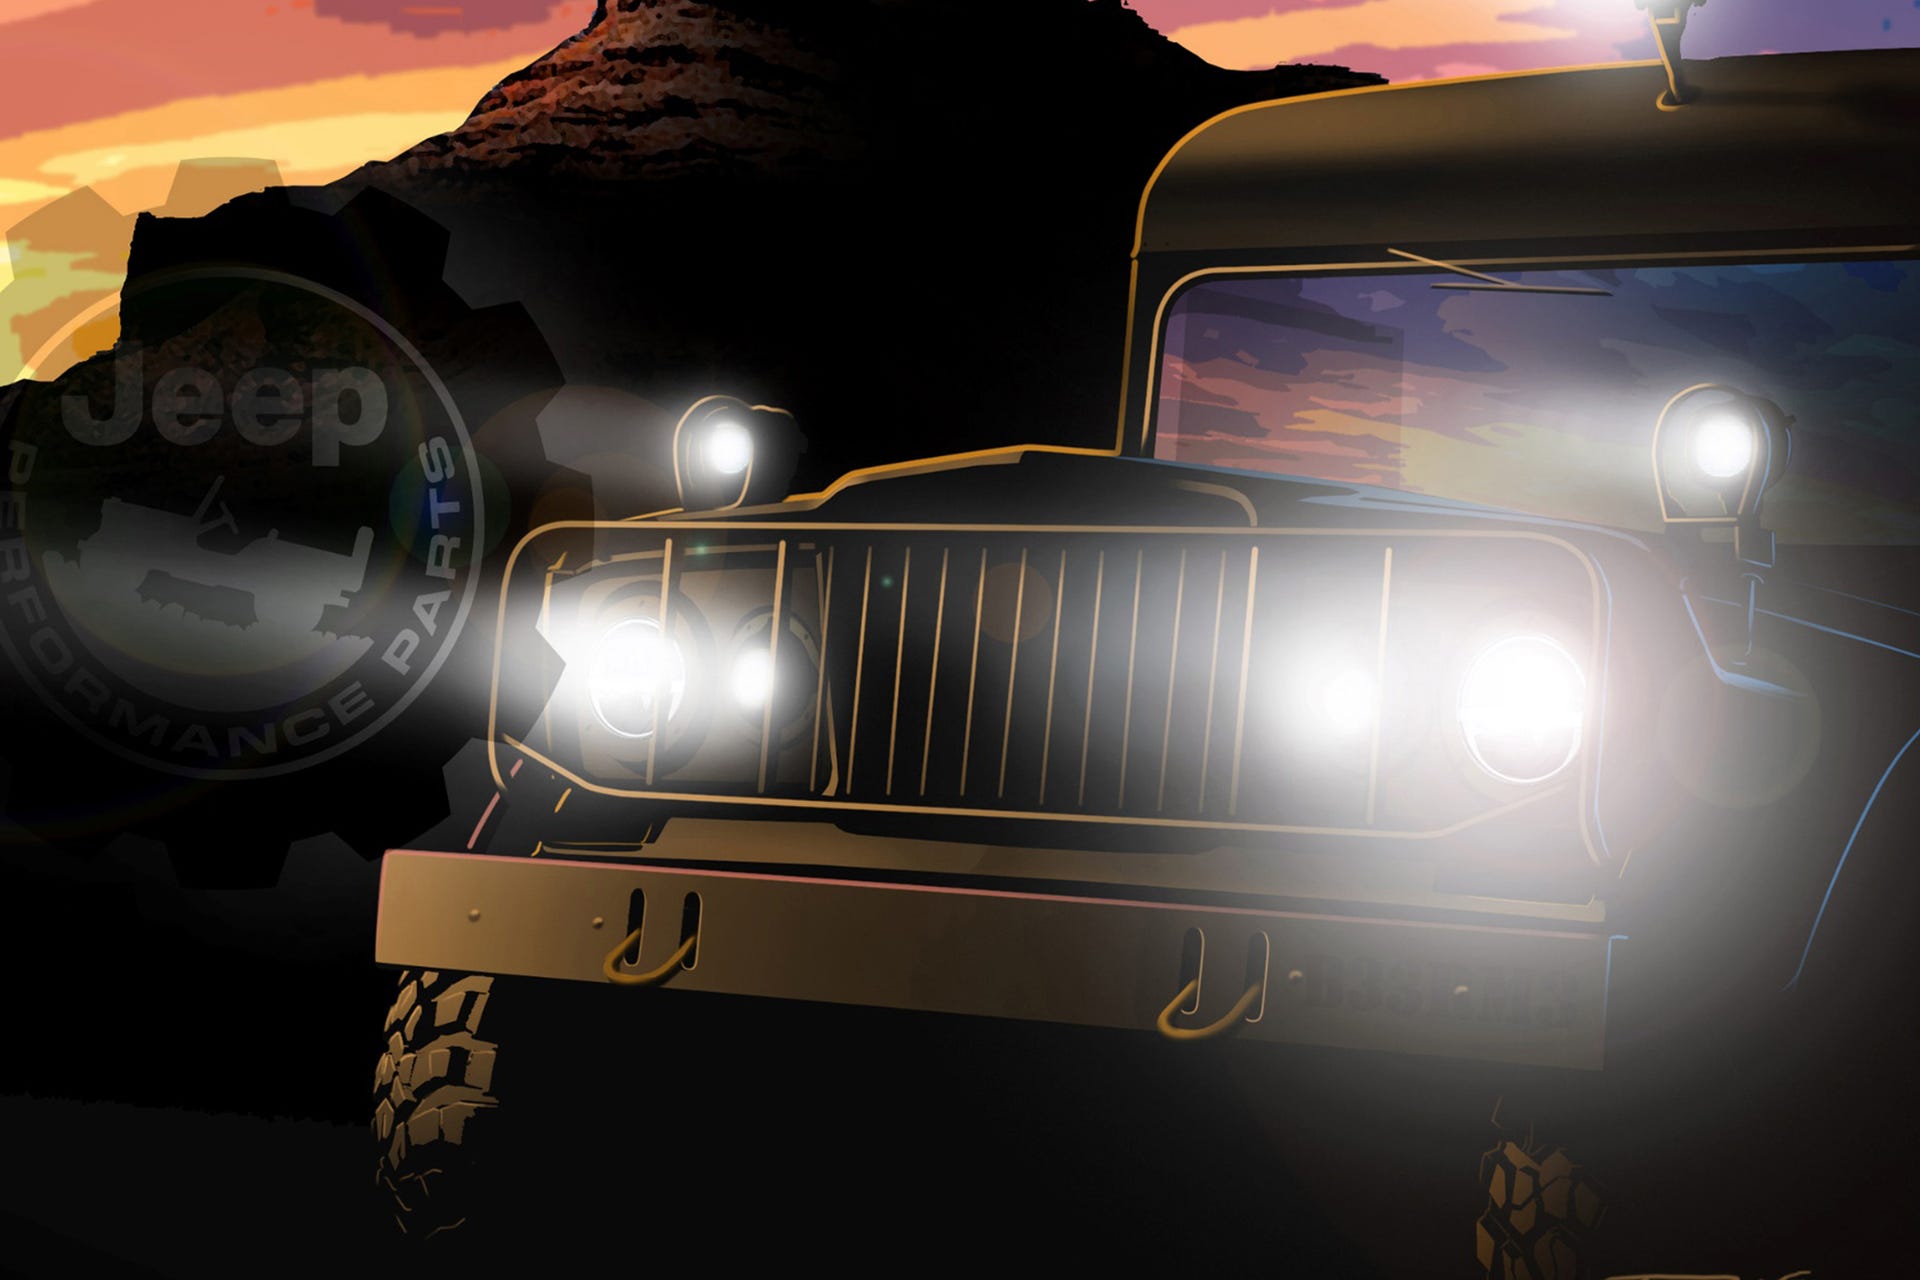 Mopar 2021 SEMA Promo Image - classic jeep